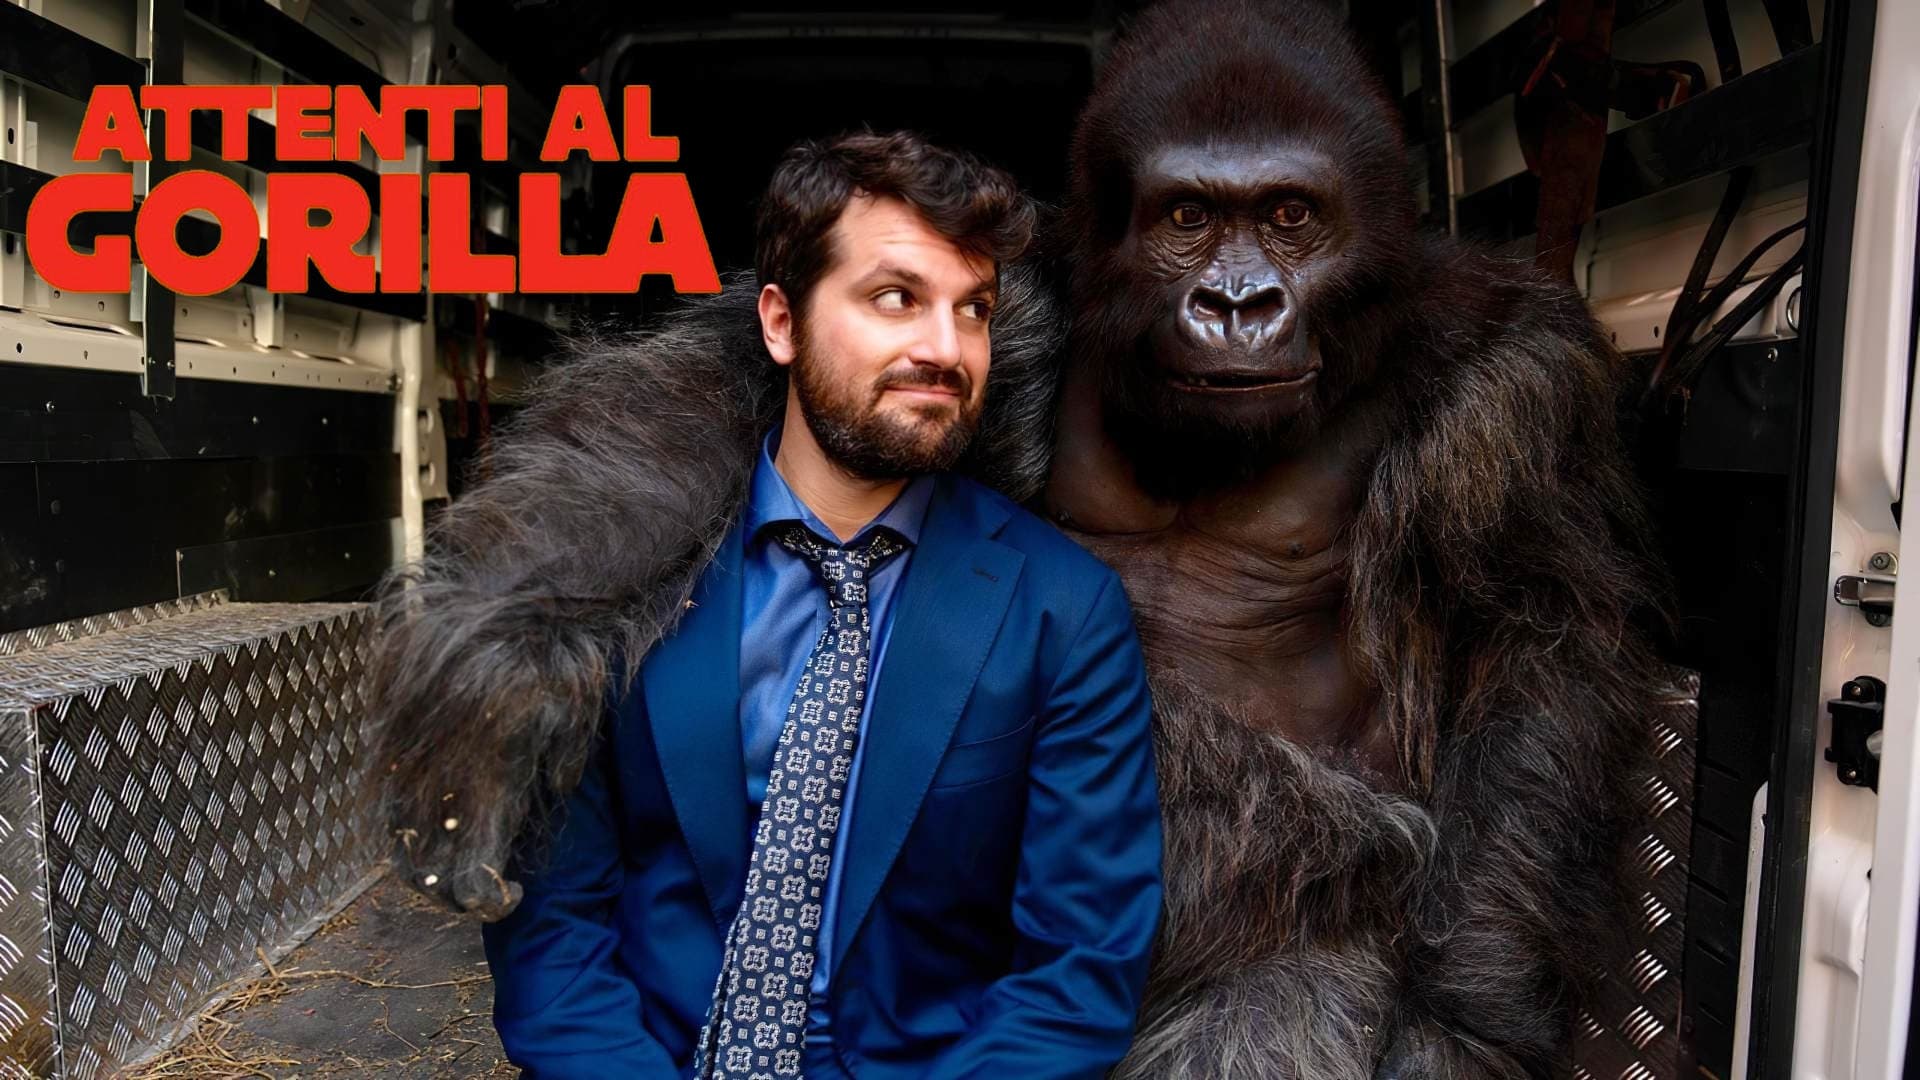 Beware the Gorilla